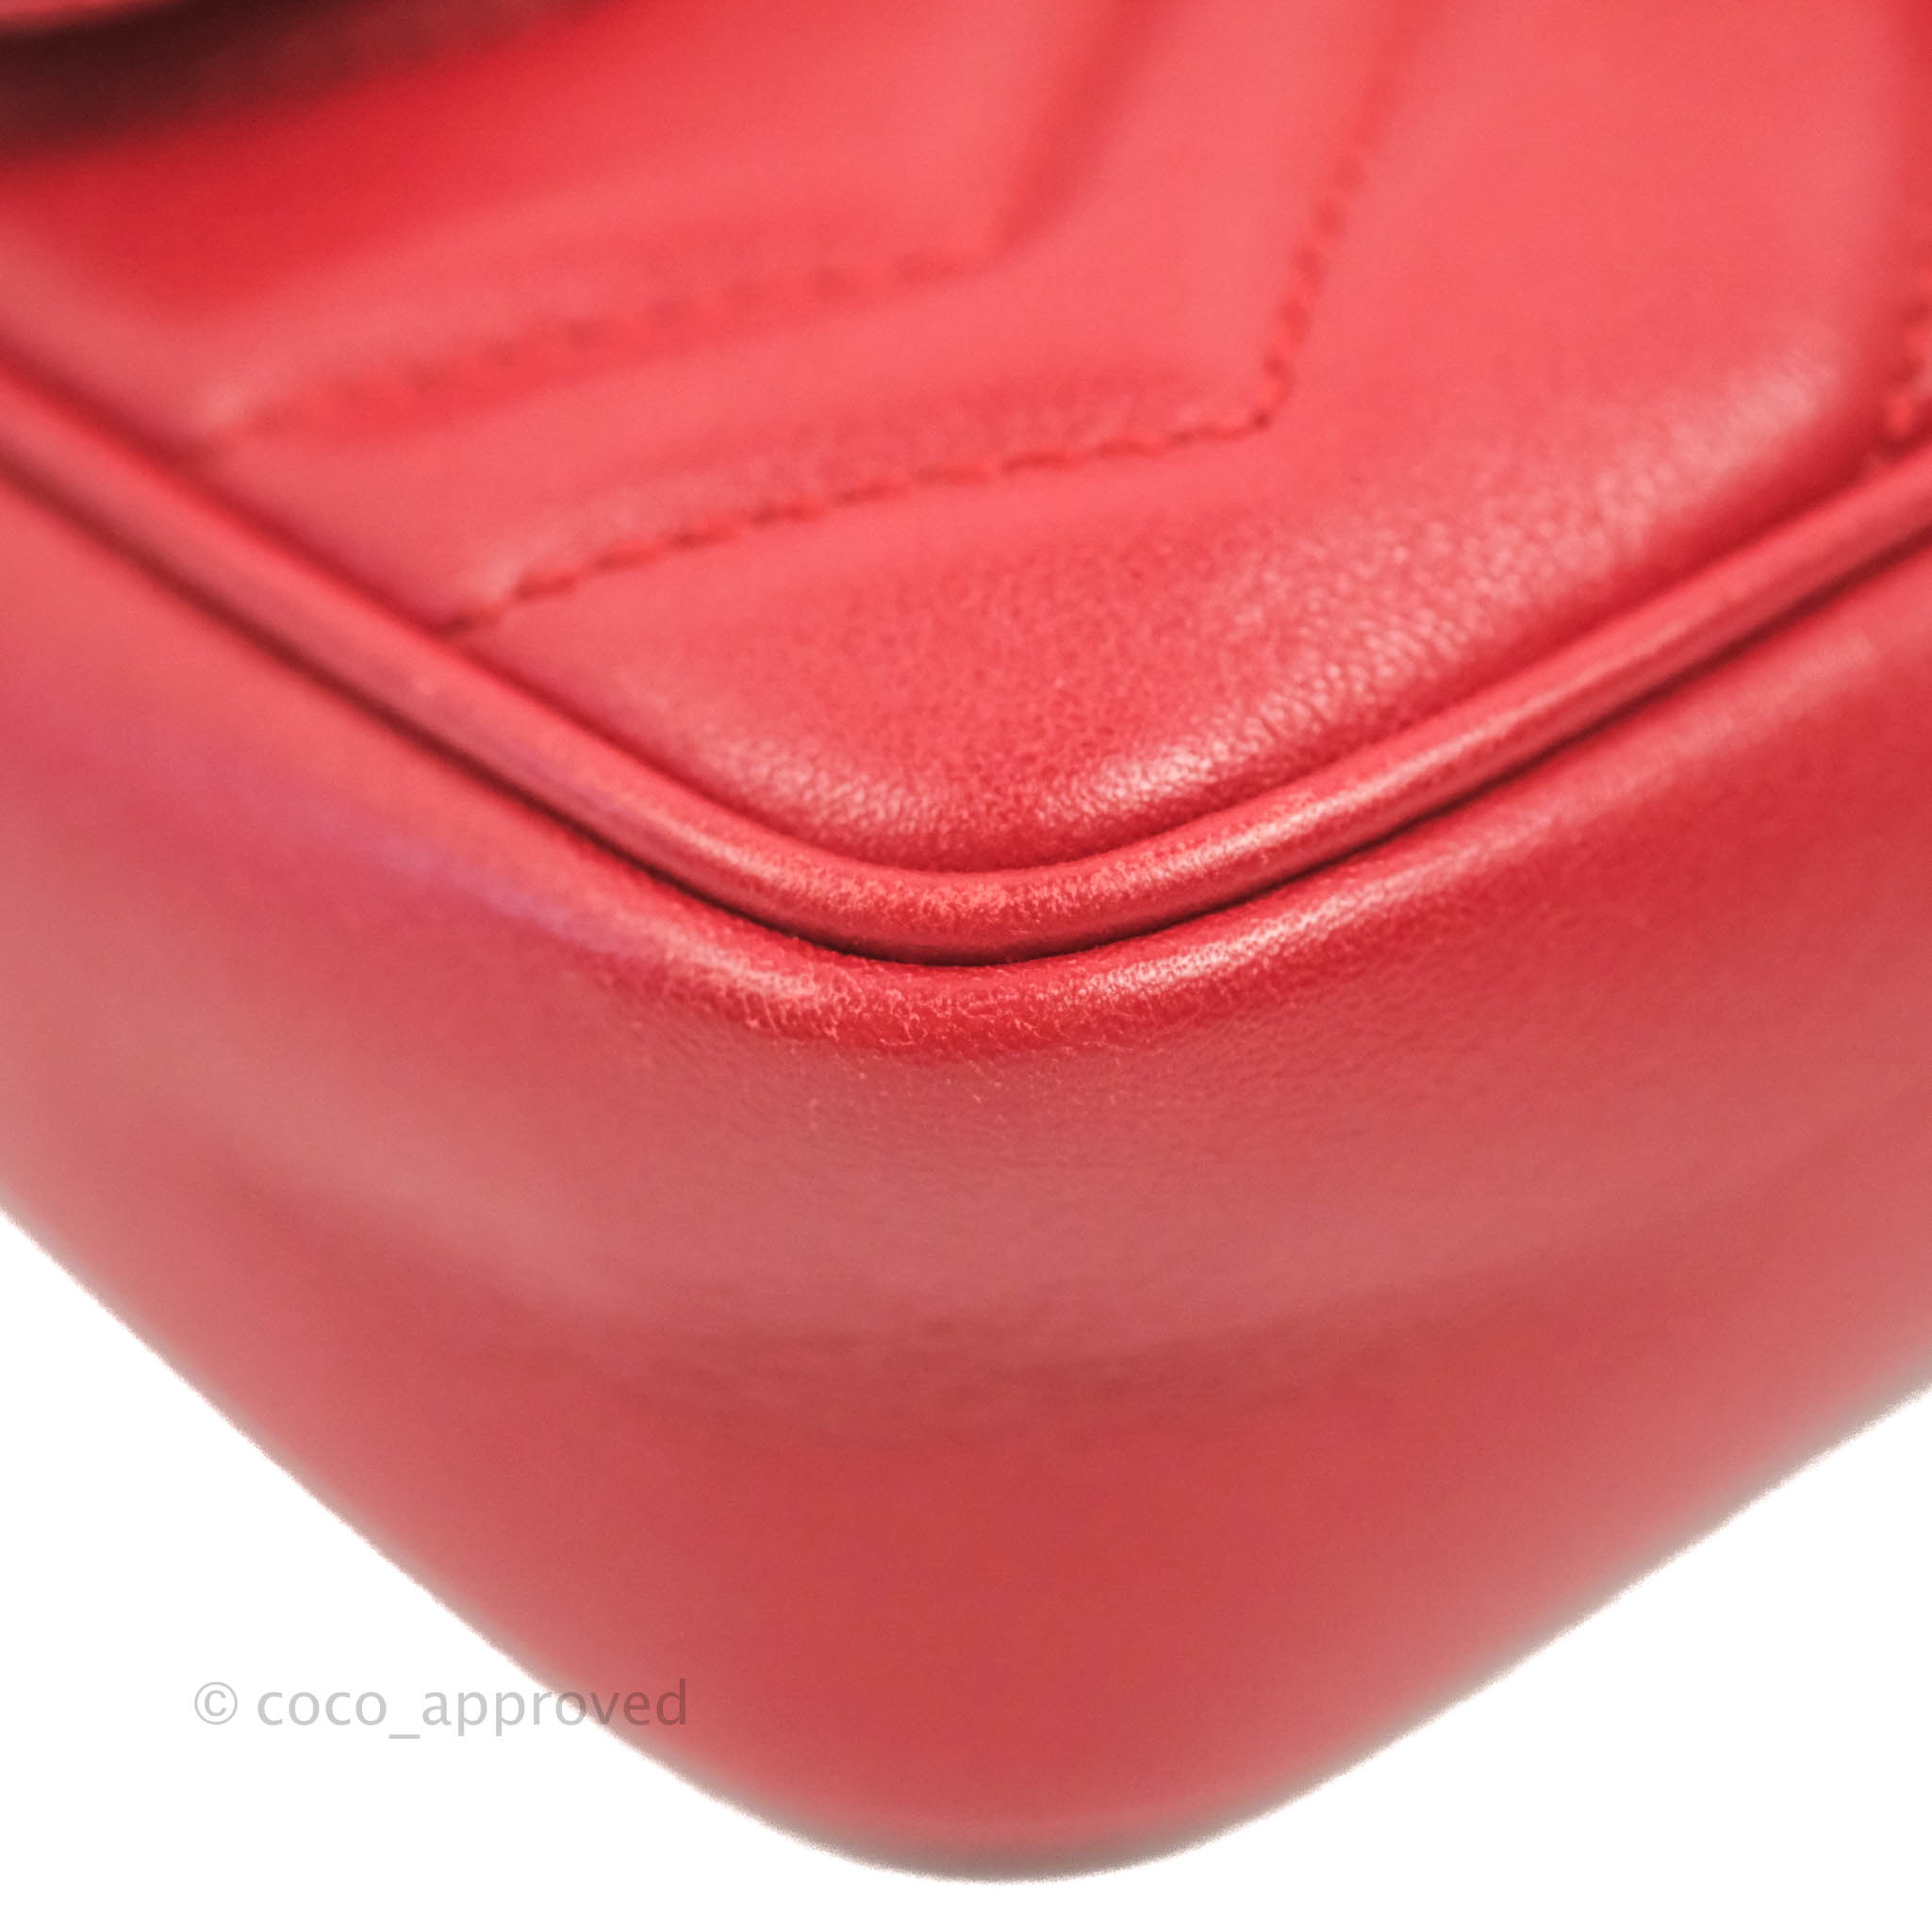 Gucci GG Marmont matelasse super mini bag red chevron leather